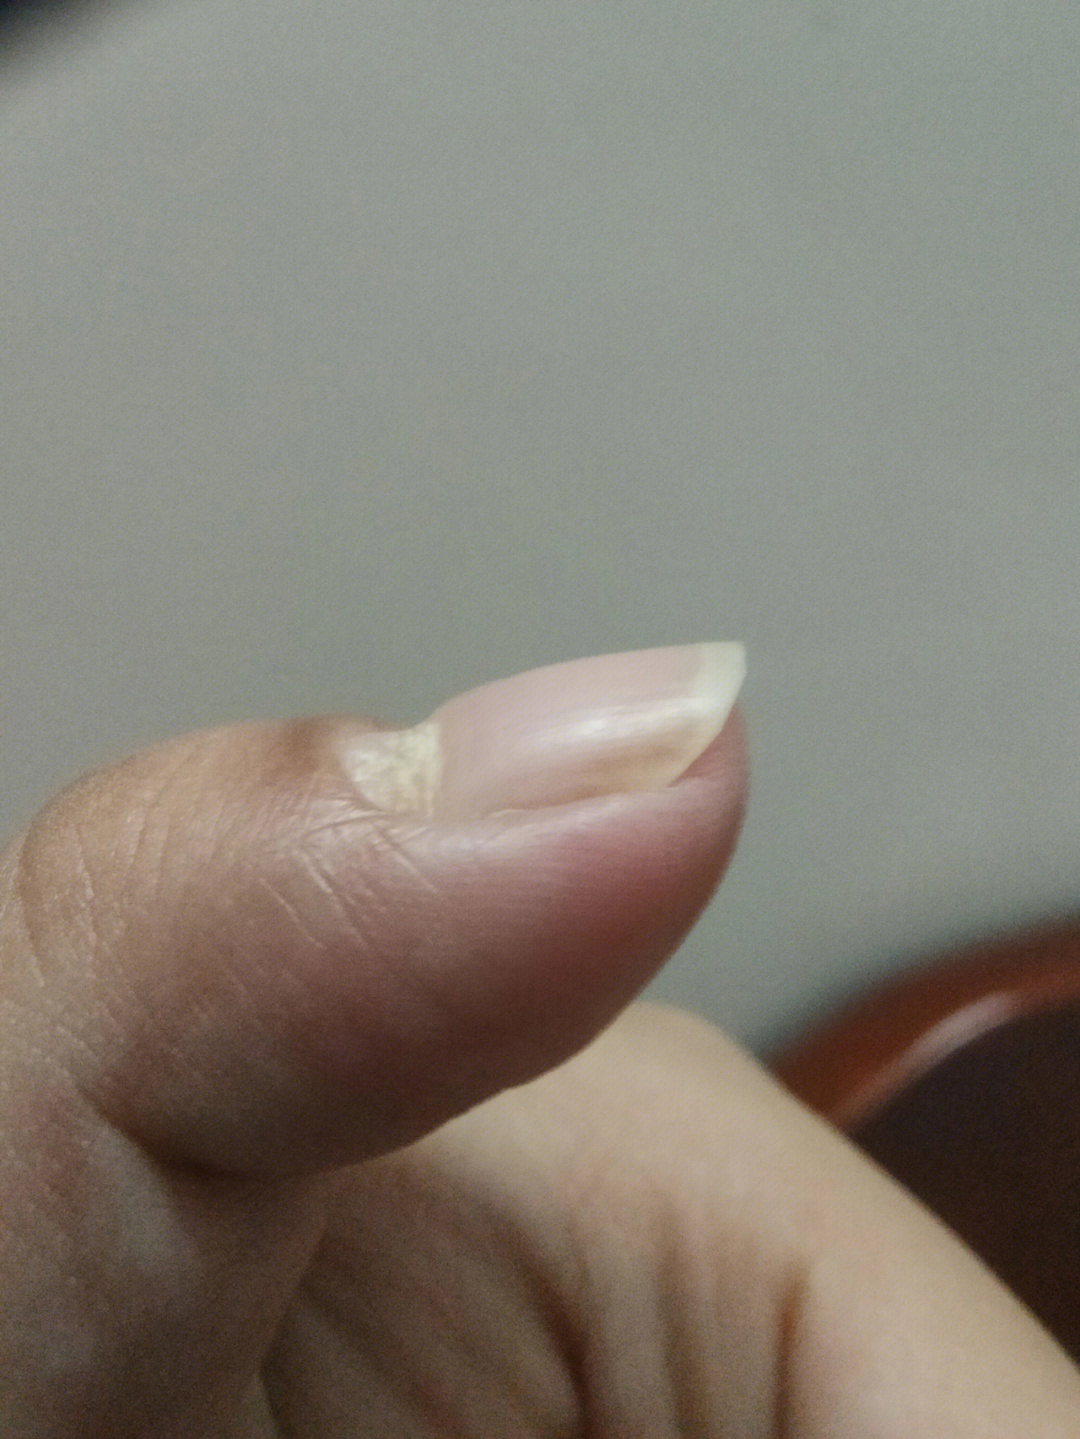 指甲月牙处凹陷的图片图片